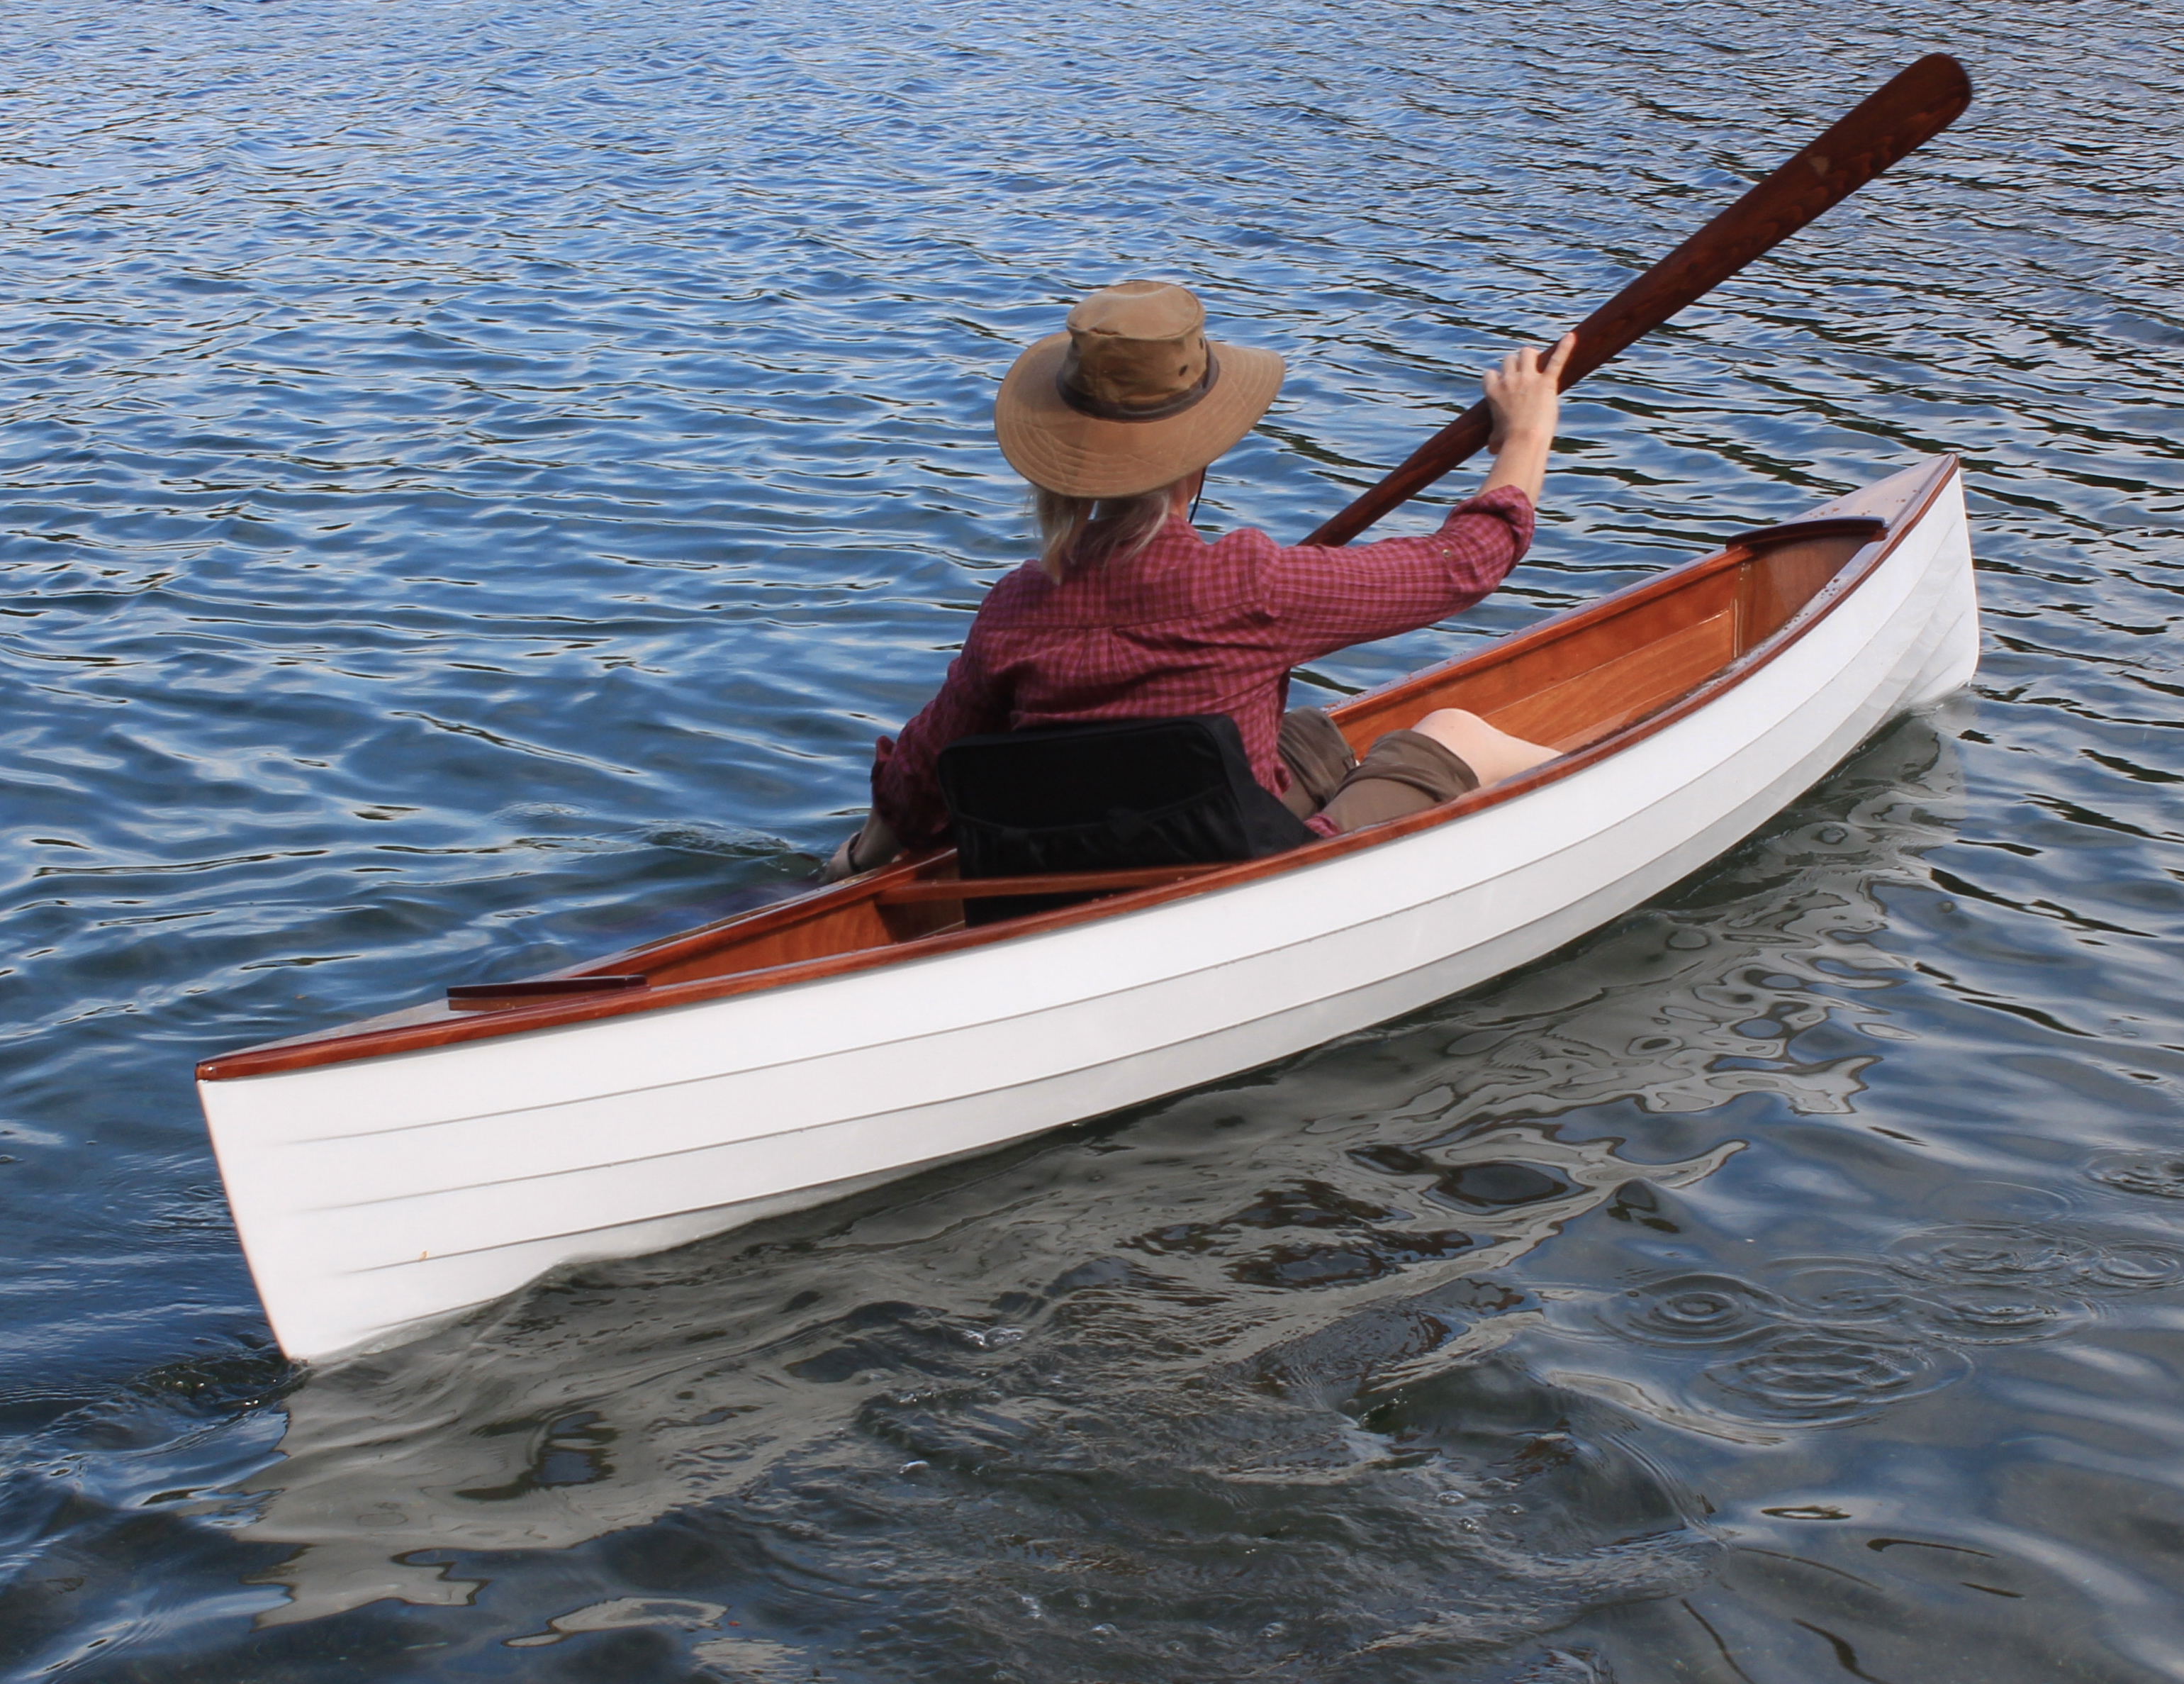 HOWB 113 – Wooden Boat Dan on Building the 12′ Sassafras Canoe